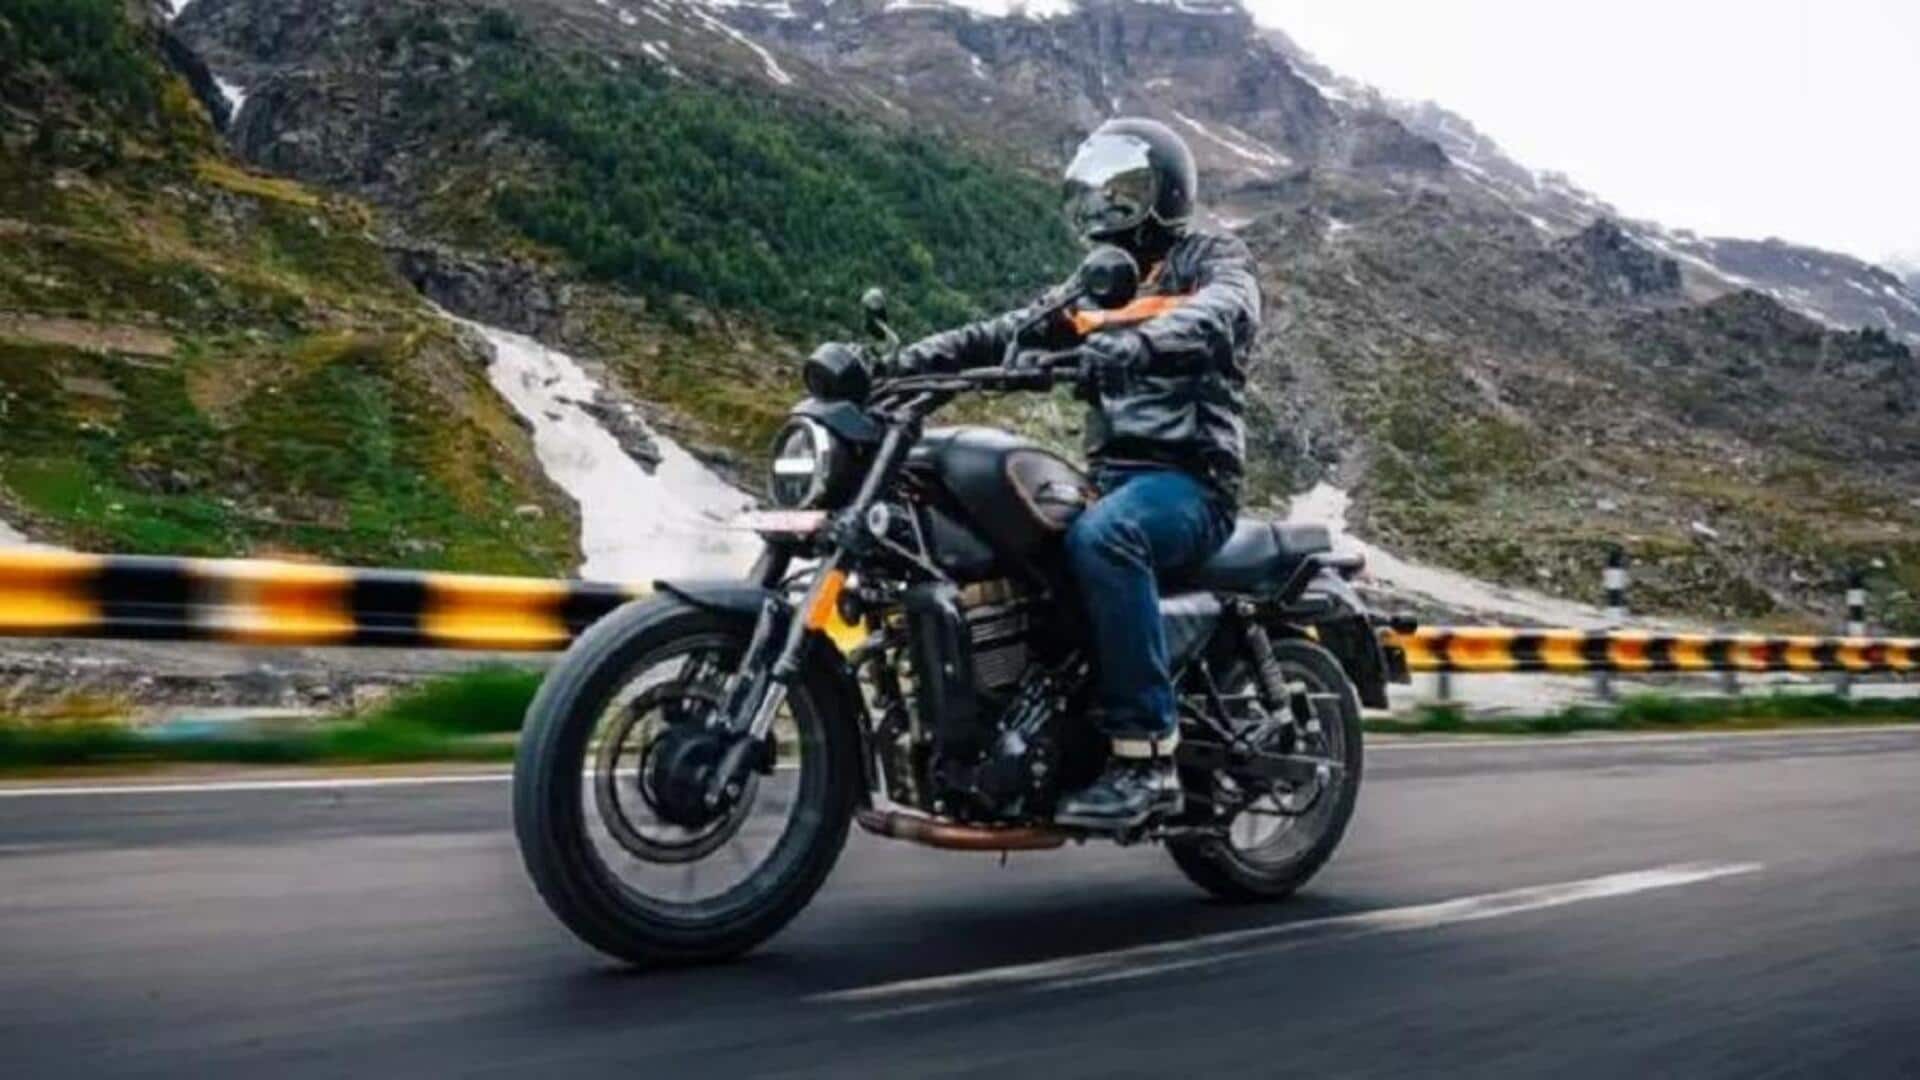 Harley Davidson X210 : అతి చౌక ధరతో హార్లీ డేవిడ్‌సన్ బైక్ వచ్చేస్తోంది..!